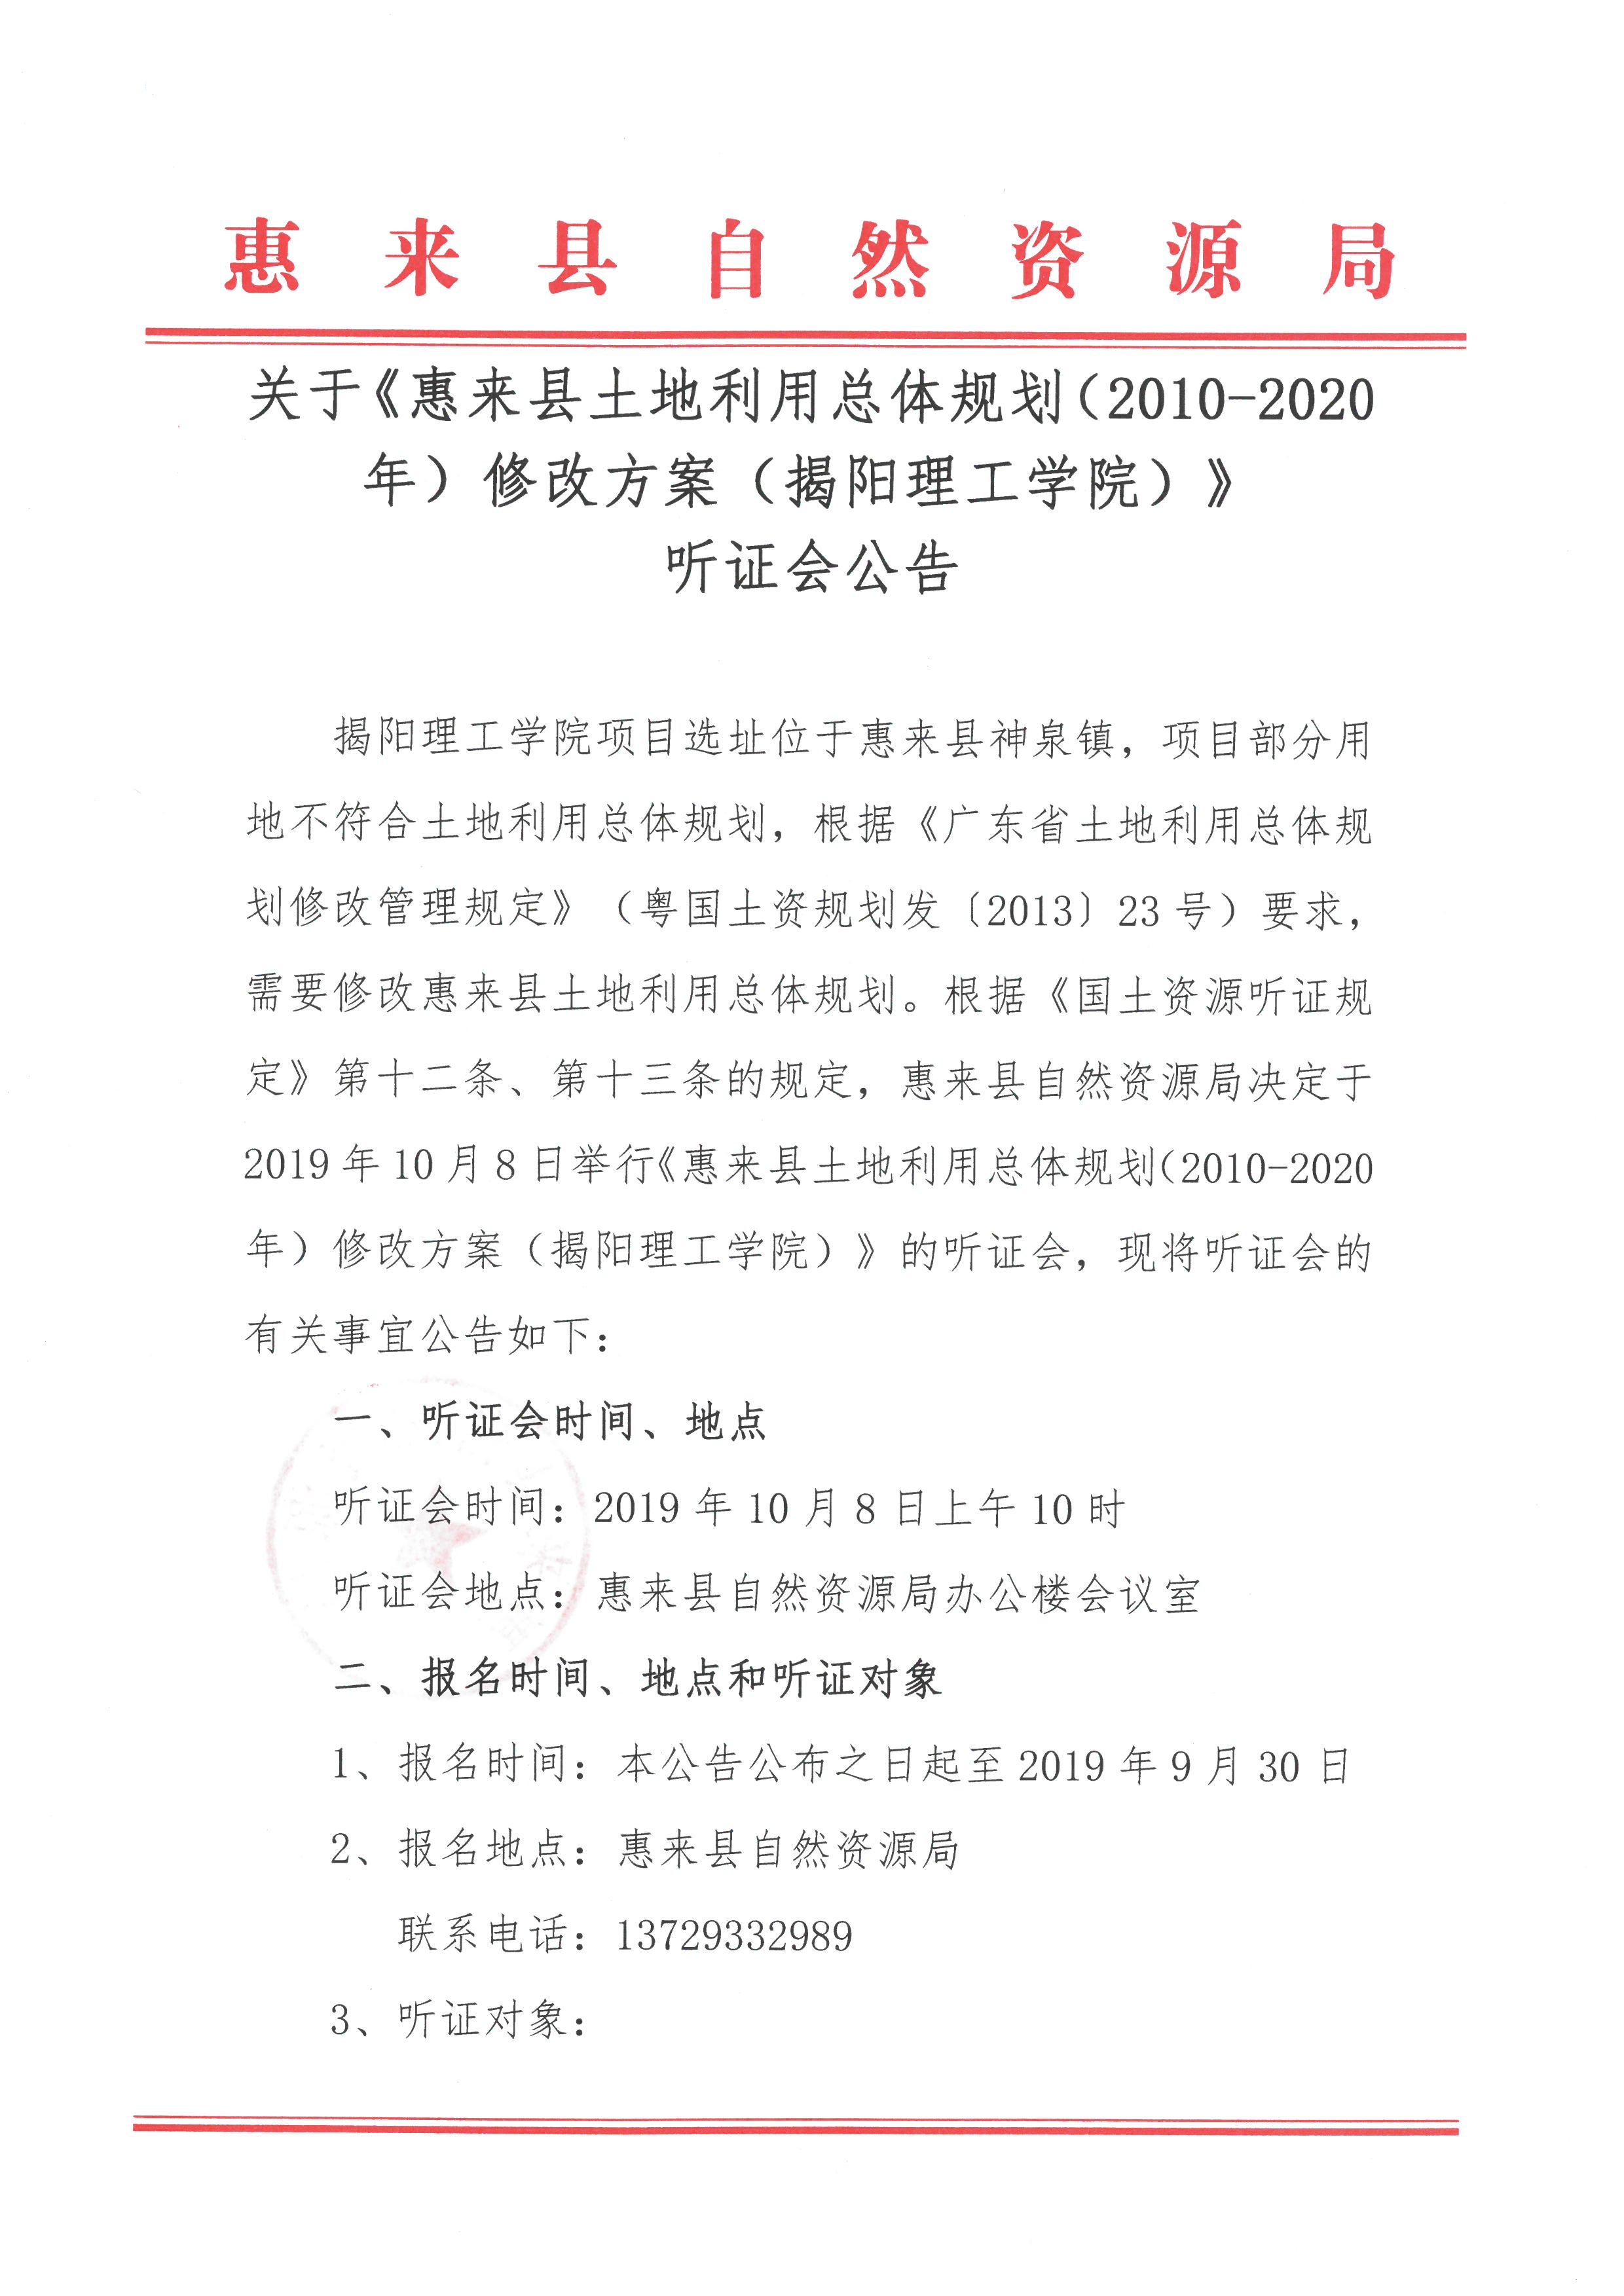 关于《惠来县土地利用总体规划(2010 -2020年)修改方案(揭阳理工学院)》听证会公告1.jpg